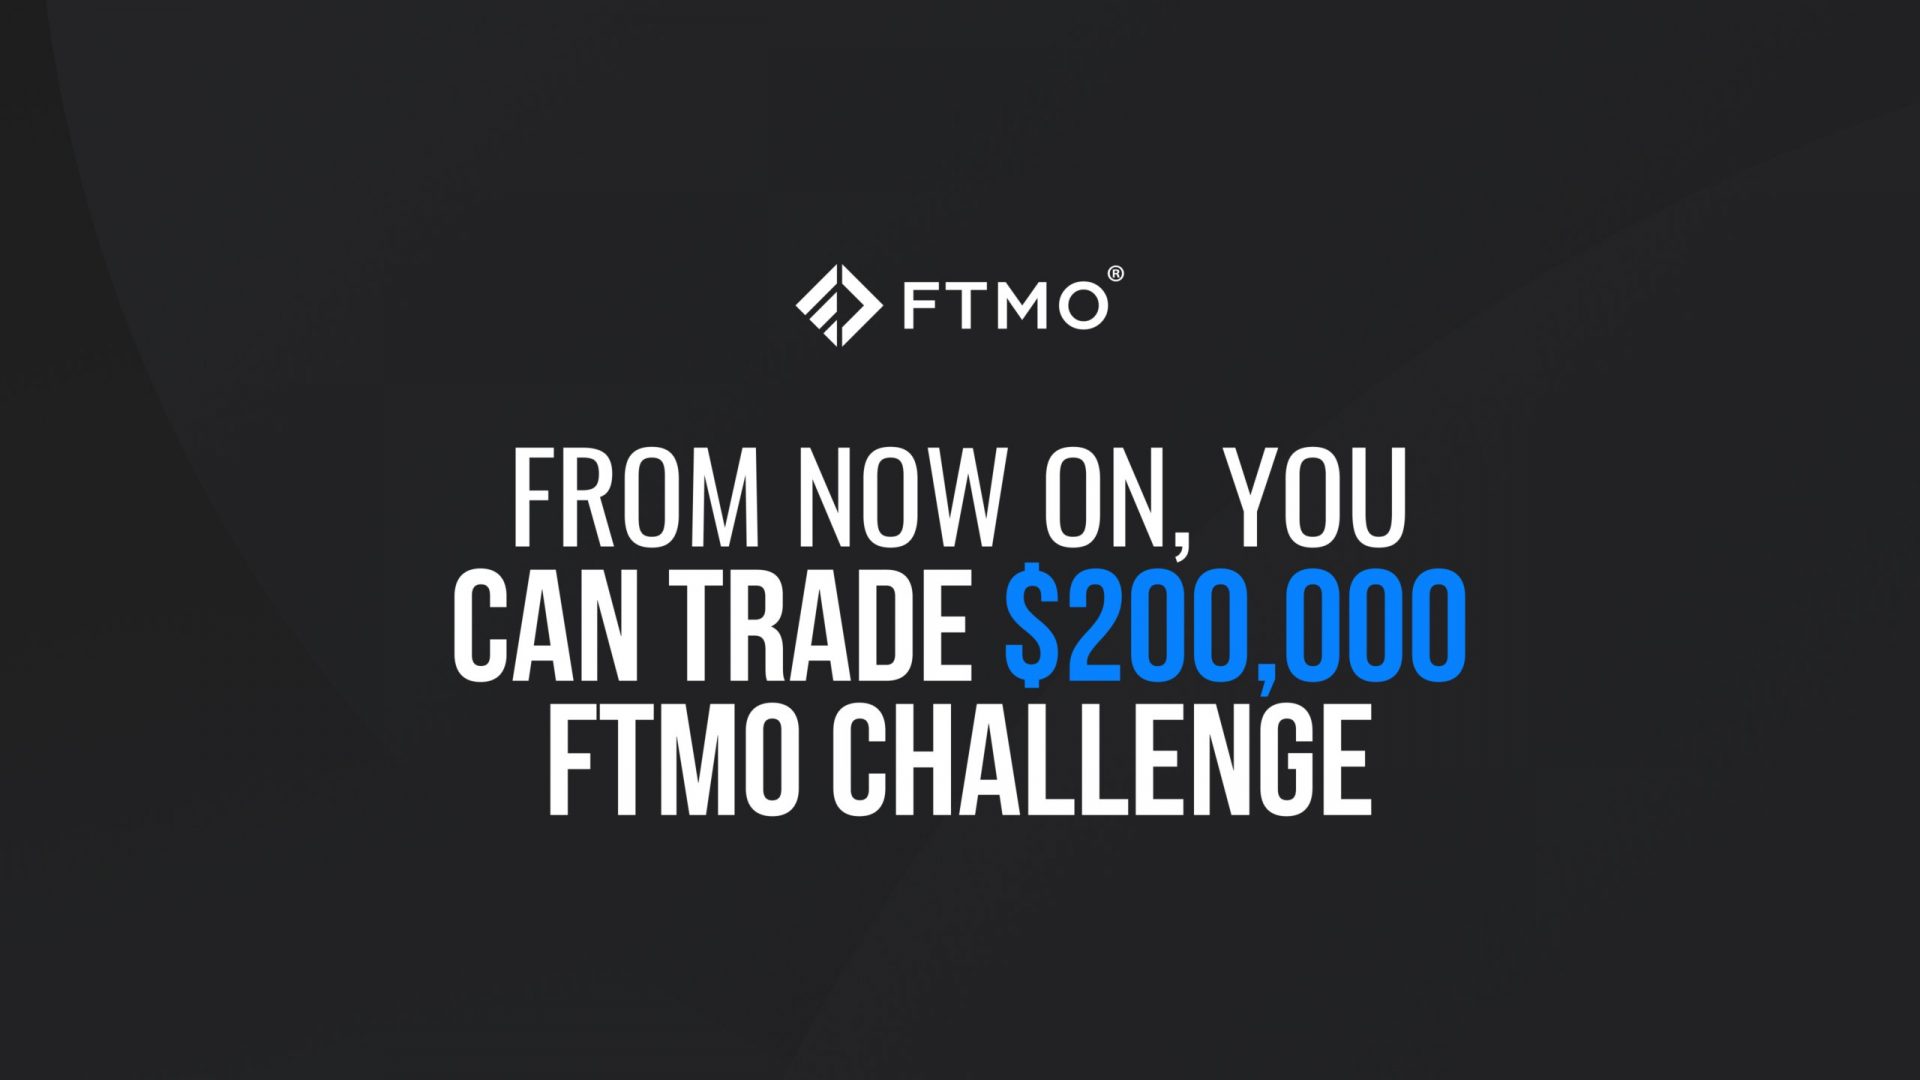 FTMO Challenge, Cuenta Fondeda Forex, cuentas fondeadas, cuentas de fondeo ftmo, cuentas de fondeo forex